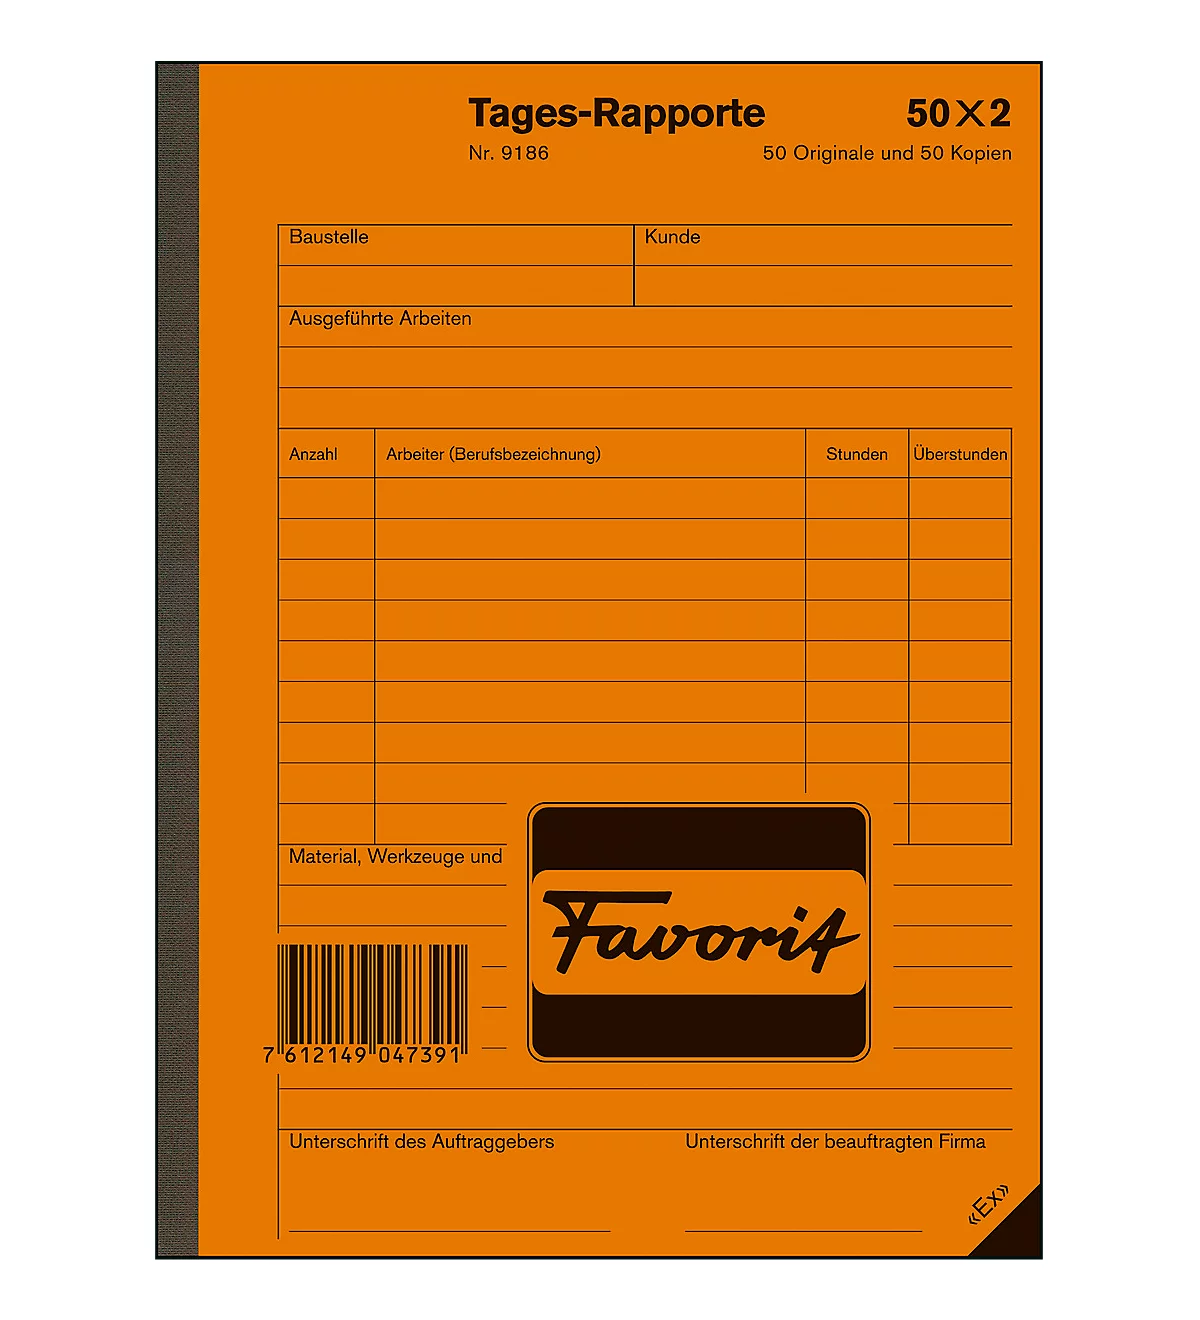 Favorit Tages-Rapporte, Format ähnlich A5, selbstdurchschreibend, Kohlepapier, perforiert, 50 x 2 Blatt